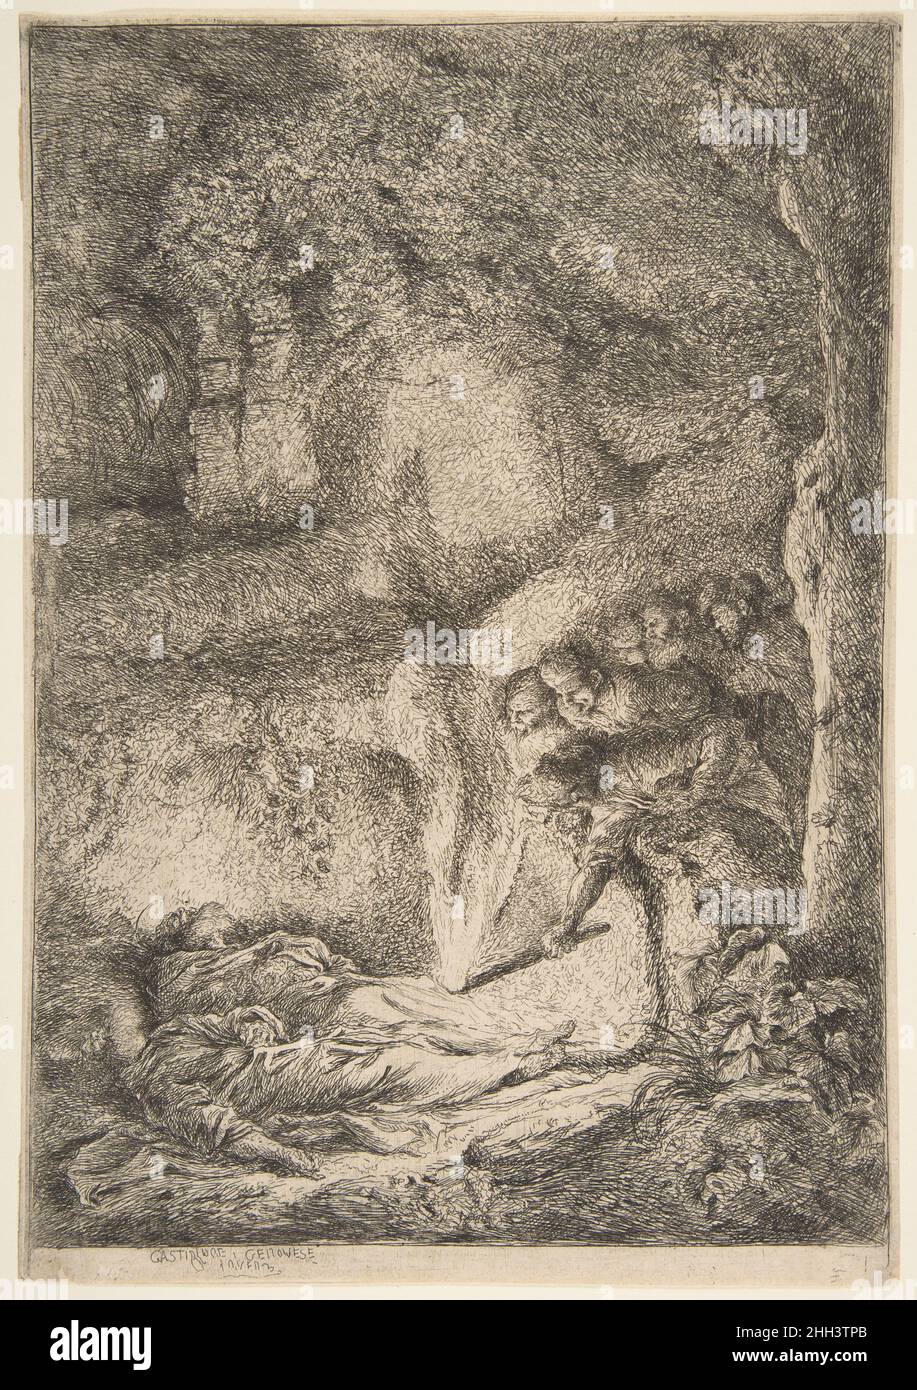 Trovare i corpi dei Santi Pietro e Paolo 1645–51 Giovanni Benedetto Castiglione (il Grechetto) Italiano molte delle opere di Castiglione affrontano la transizione degli sforzi terreni, della morte e del decadimento. Uno dei più innovativi produttori di stampe del suo tempo, fu fortemente influenzato dalle stampe di Rembrandt e dal loro tenebrismo (da tenebroso, che suggerisce l'oscurità). Egli cercò anche soggetti religiosi che sarebbero arricchiti da un ambiente cupo, come questo esempio, che raffigura la volta sulla via Appia fuori Roma dove i corpi dei due santi martirizzati erano nascosti. Qui, un gruppo di uomini è in posizione supina Foto Stock